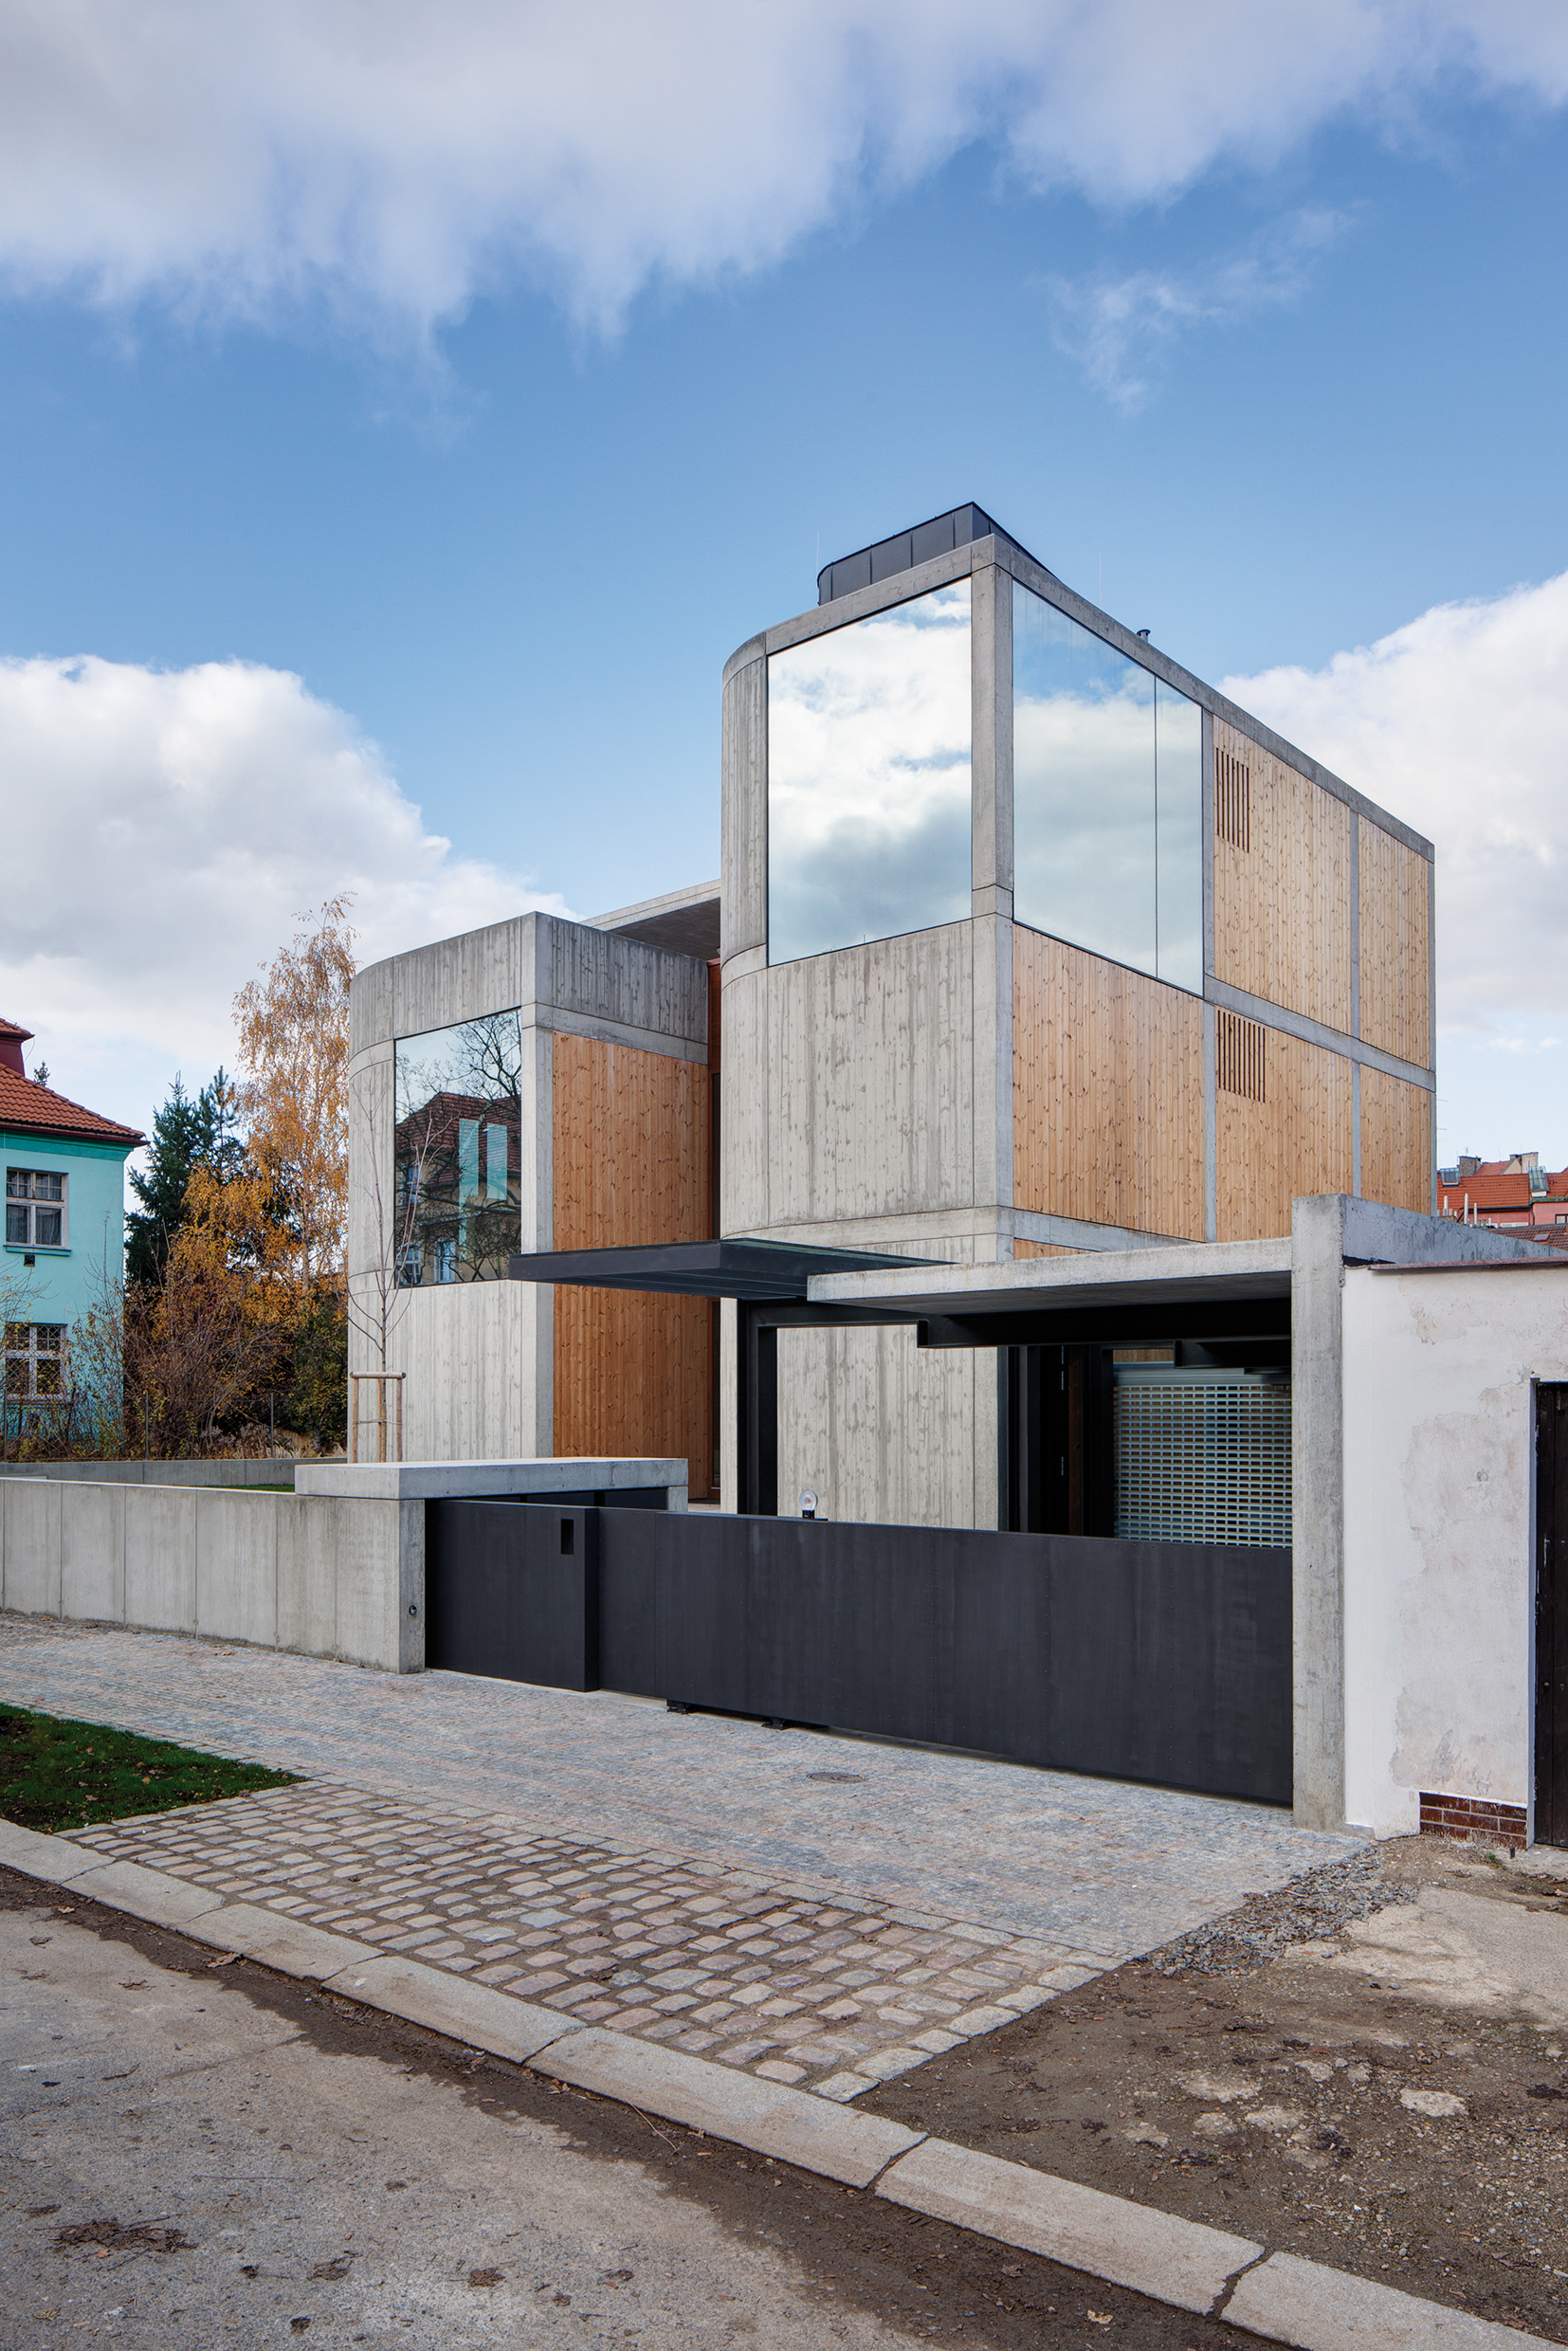 Fasády jsou provedeny z pohledového betonu v kombinaci s dřevěnými obklady.